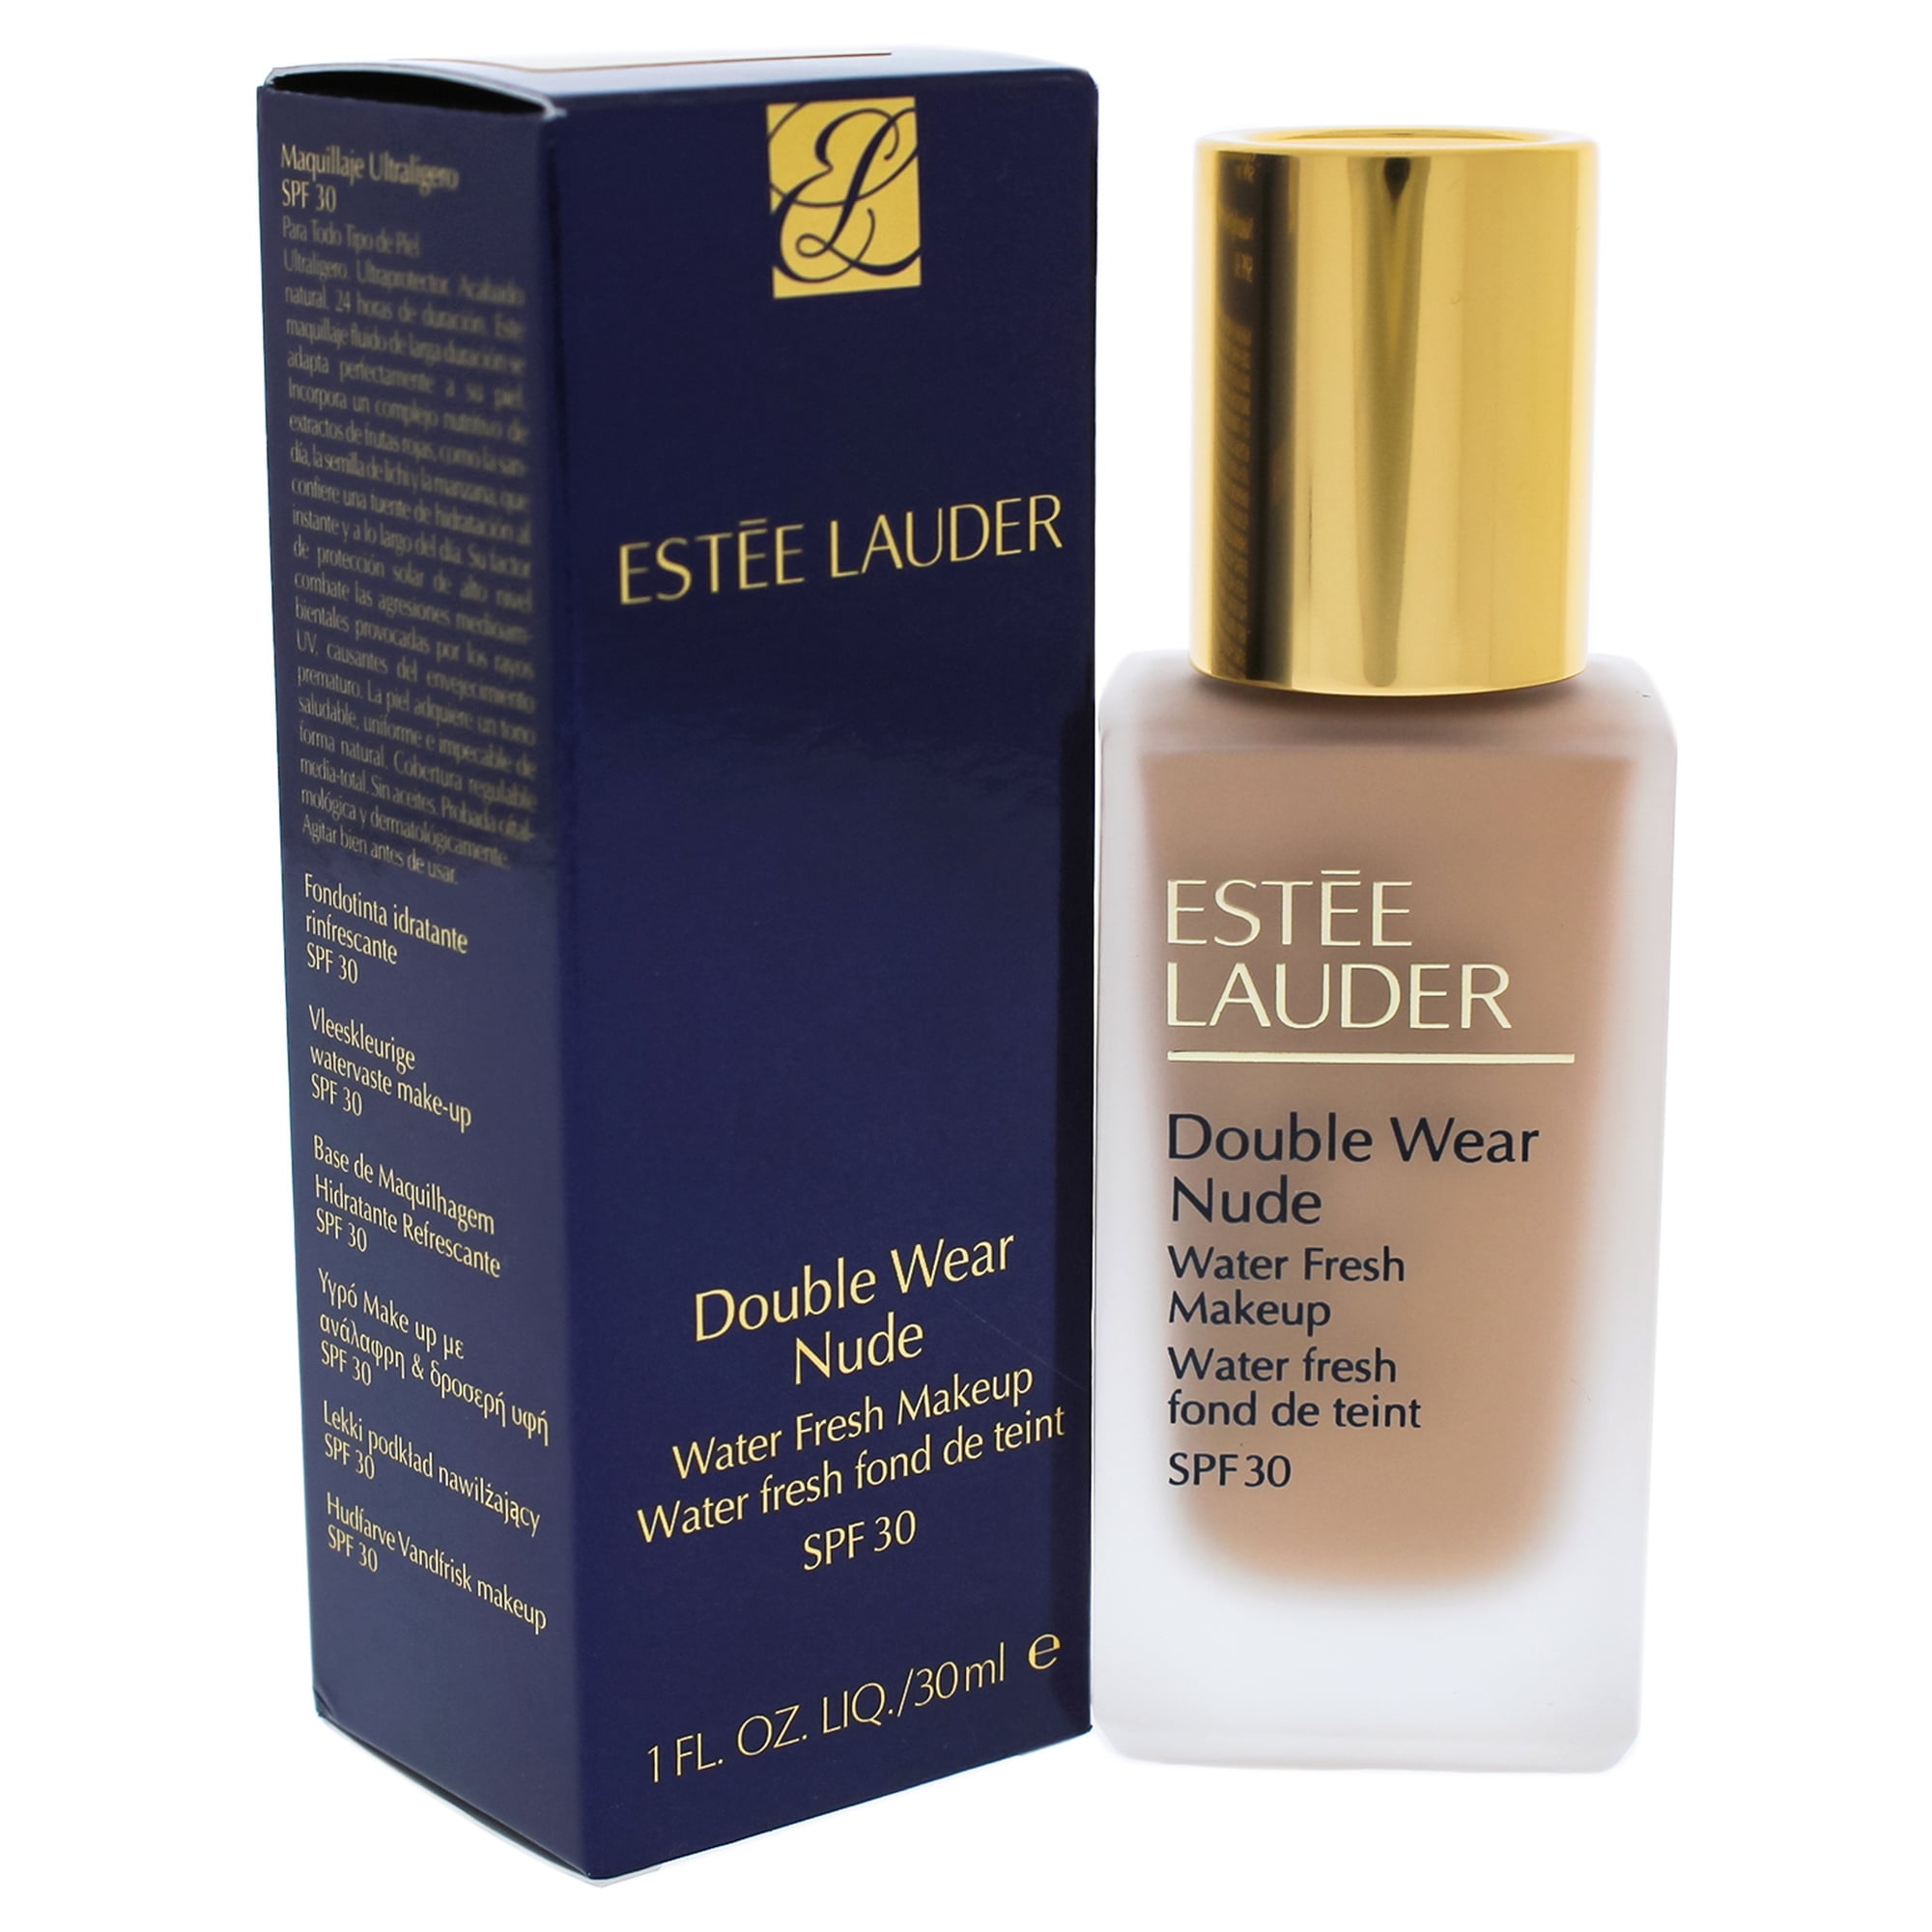 Estee Lauder Double Wear Nude Water Fresh Makeup SPF 30 